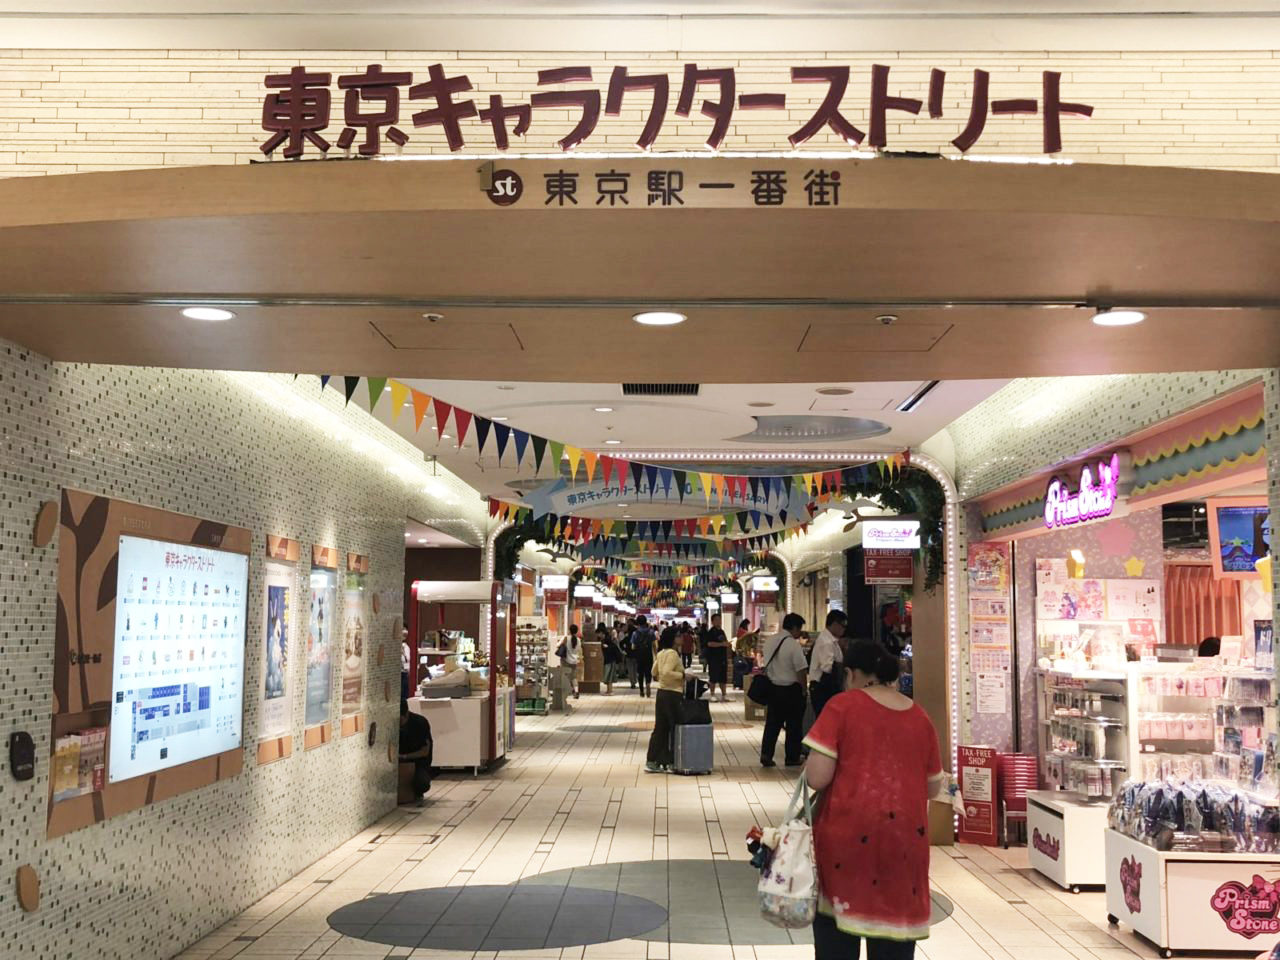 東京キャラクターストリートに人気者が集結 スヌーピーやムーミンの東京駅限定品も ぎゅってweb